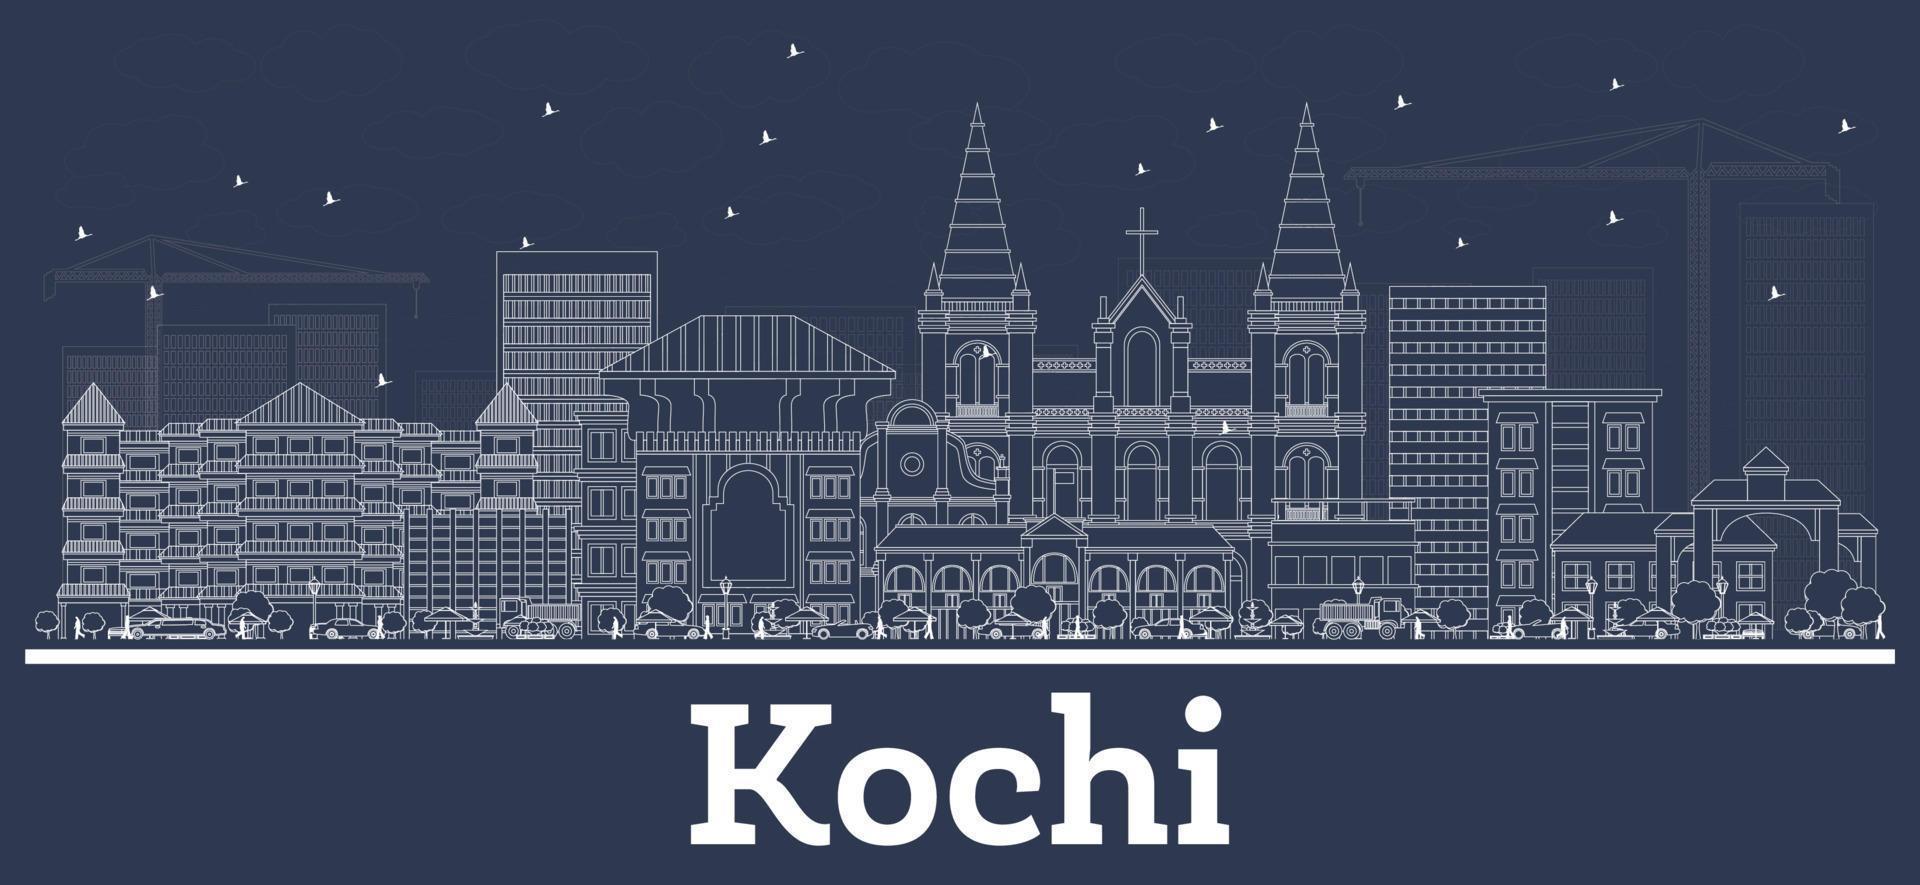 Décrire les toits de la ville de Kochi en Inde avec des bâtiments blancs. vecteur